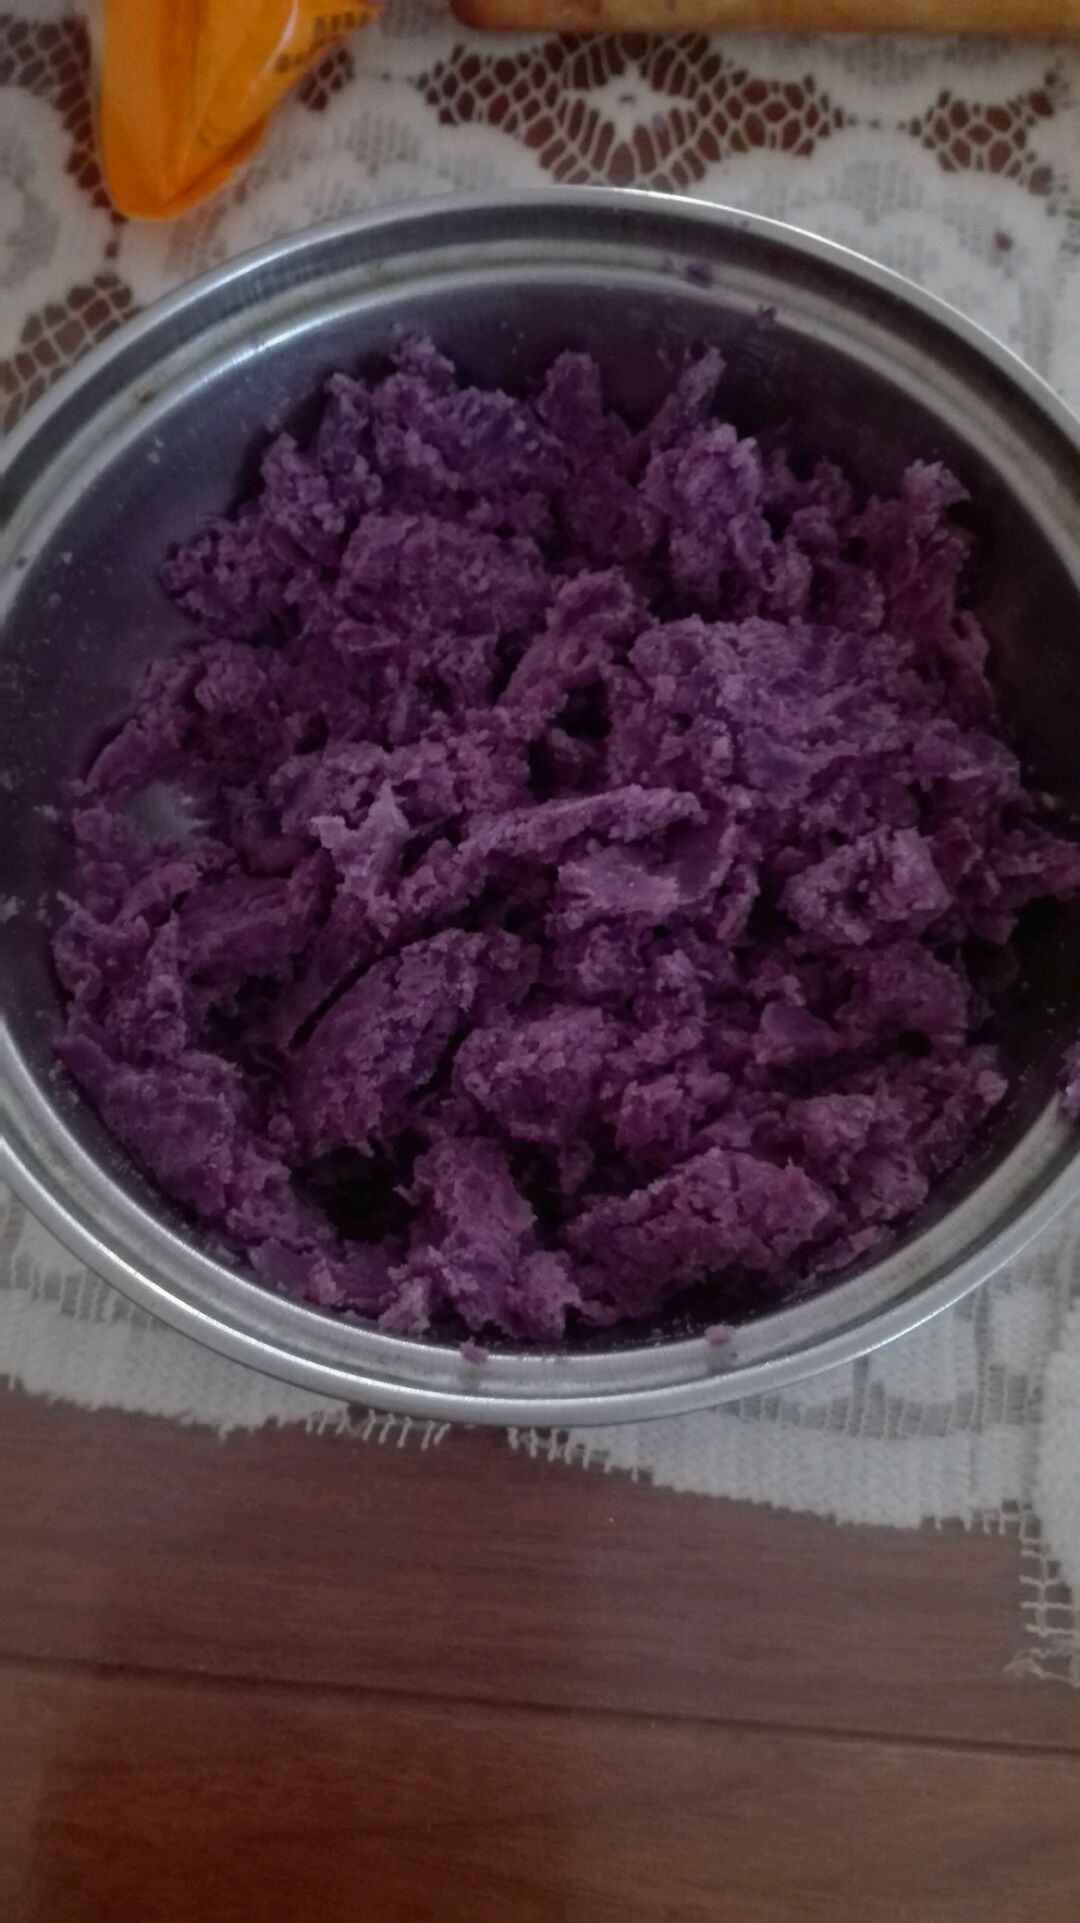 洋货码头 麦片 燕麦片 紫薯麦片 谷物麦片 食材优质自然，口感纯正无刺激，含糖、甜度适中。 悦享心之味混合水果紫薯谷物麦片600g